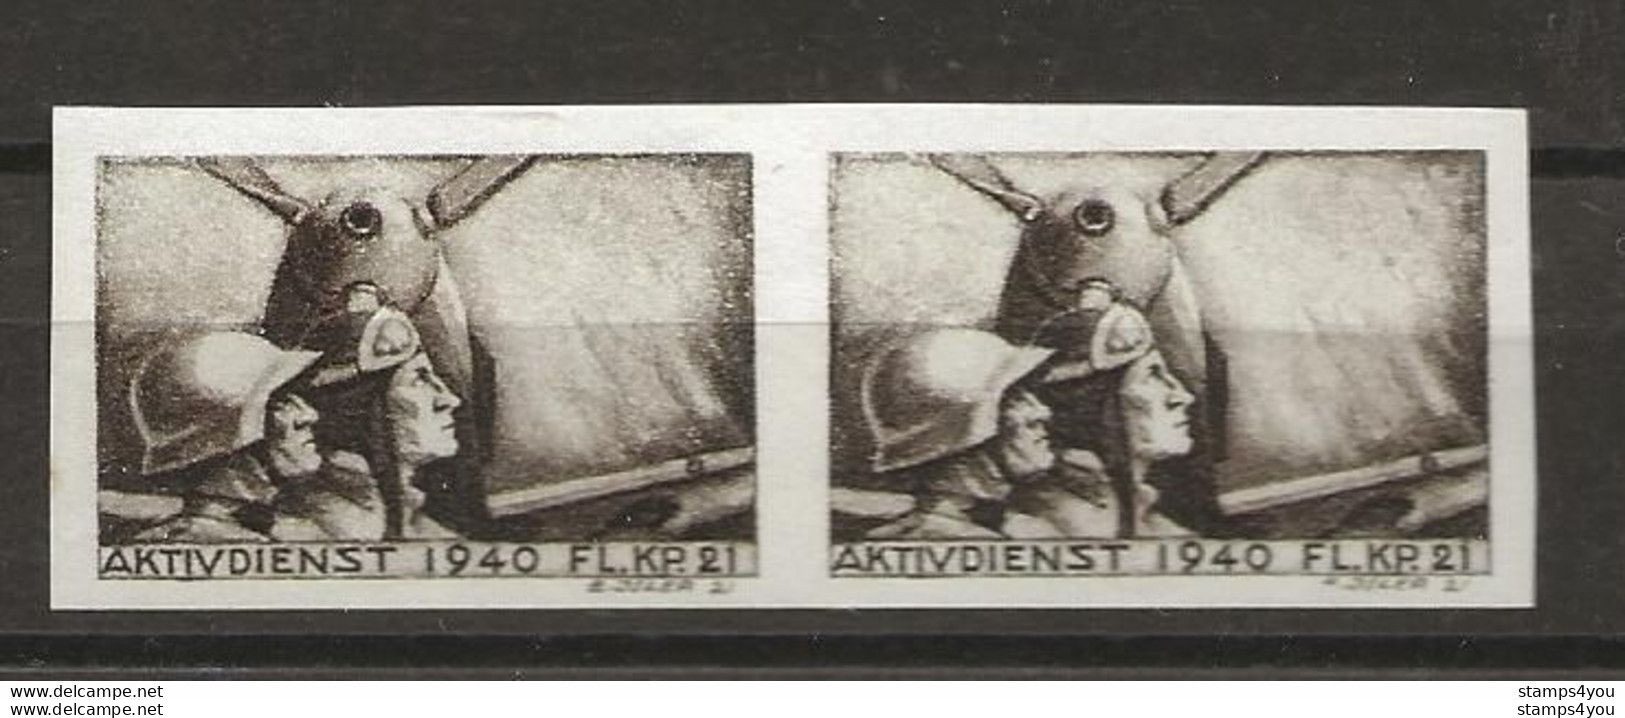 406 - 5b - Paire Timbres Non-dentelés Neufs  "Aktivdienst 1940 Fl. Kp. 21" - Vignetten